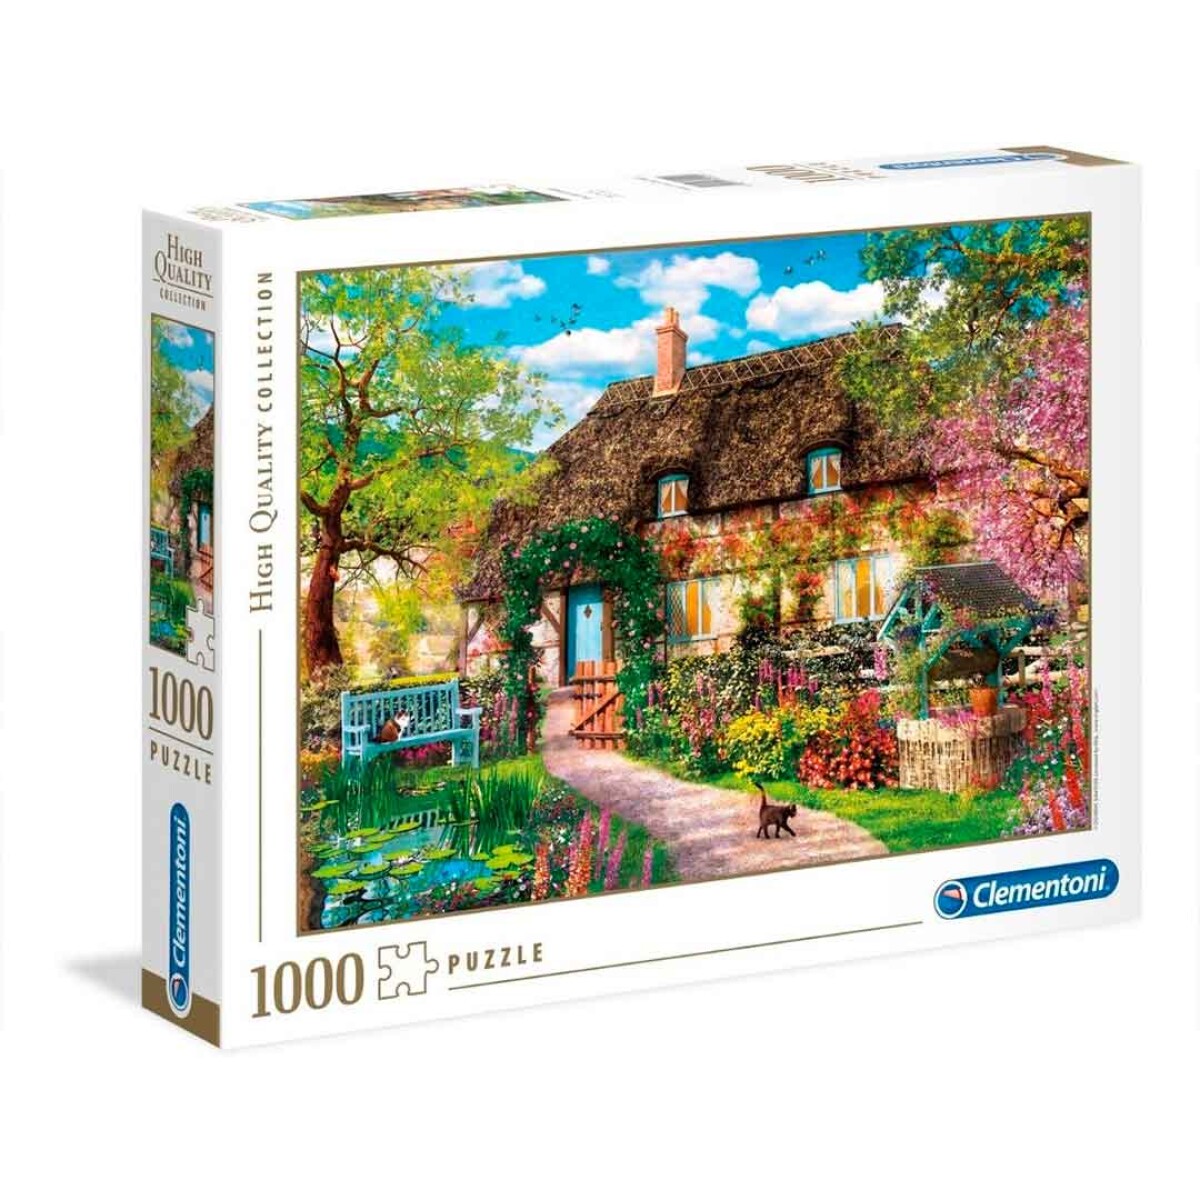 Puzzle Clementoni 1000 piezas Cabaña High Quality - 001 